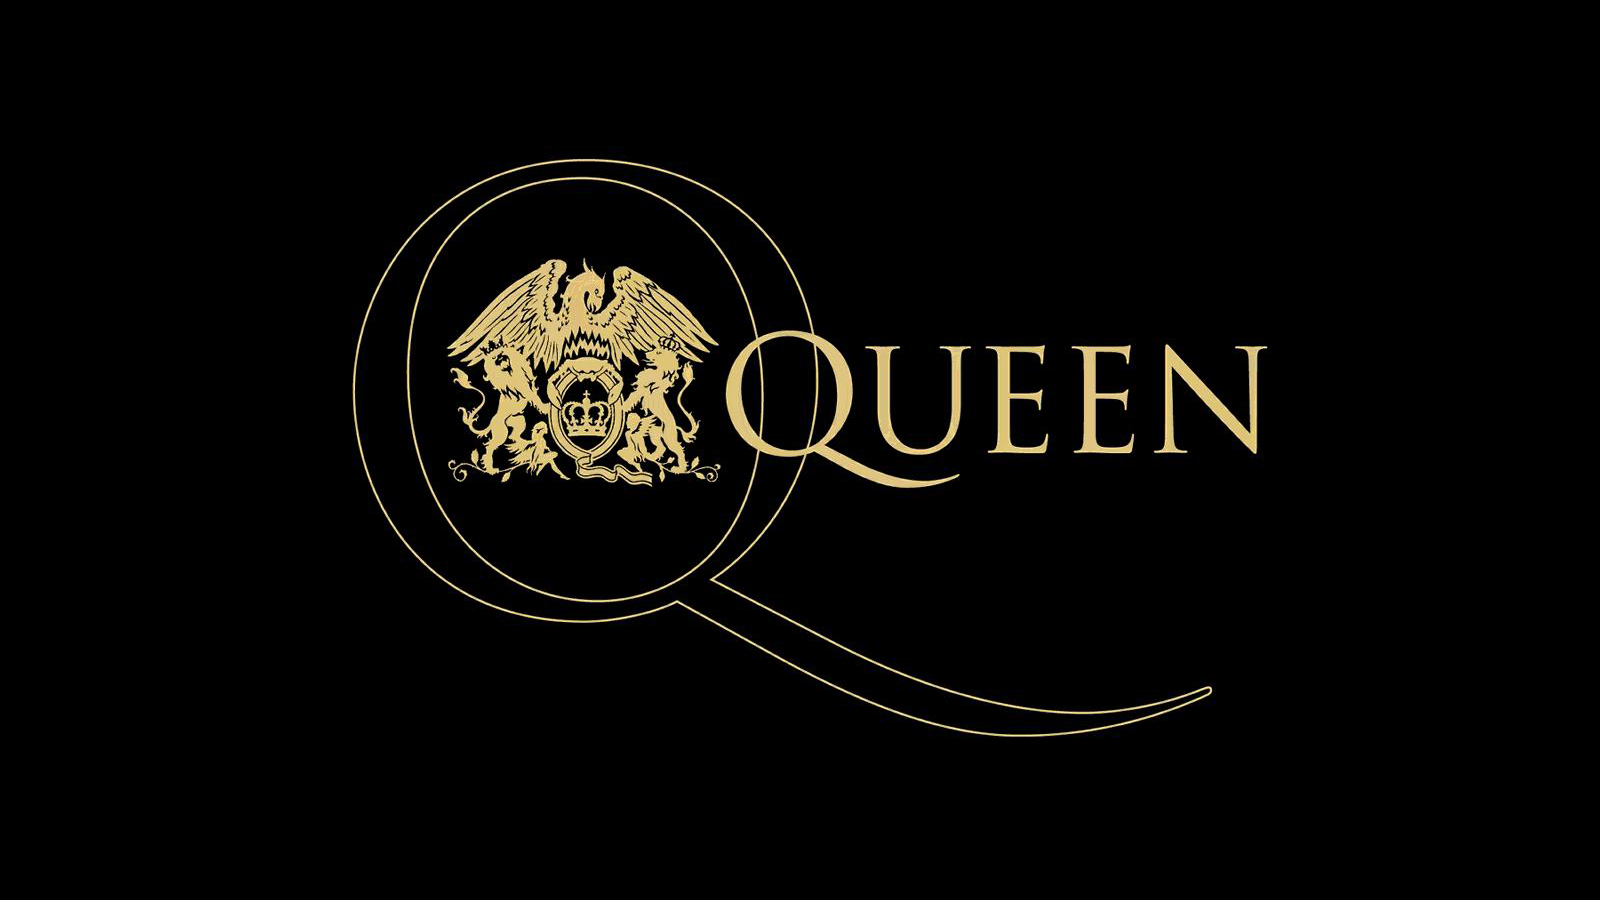 Download Queen Band Logos